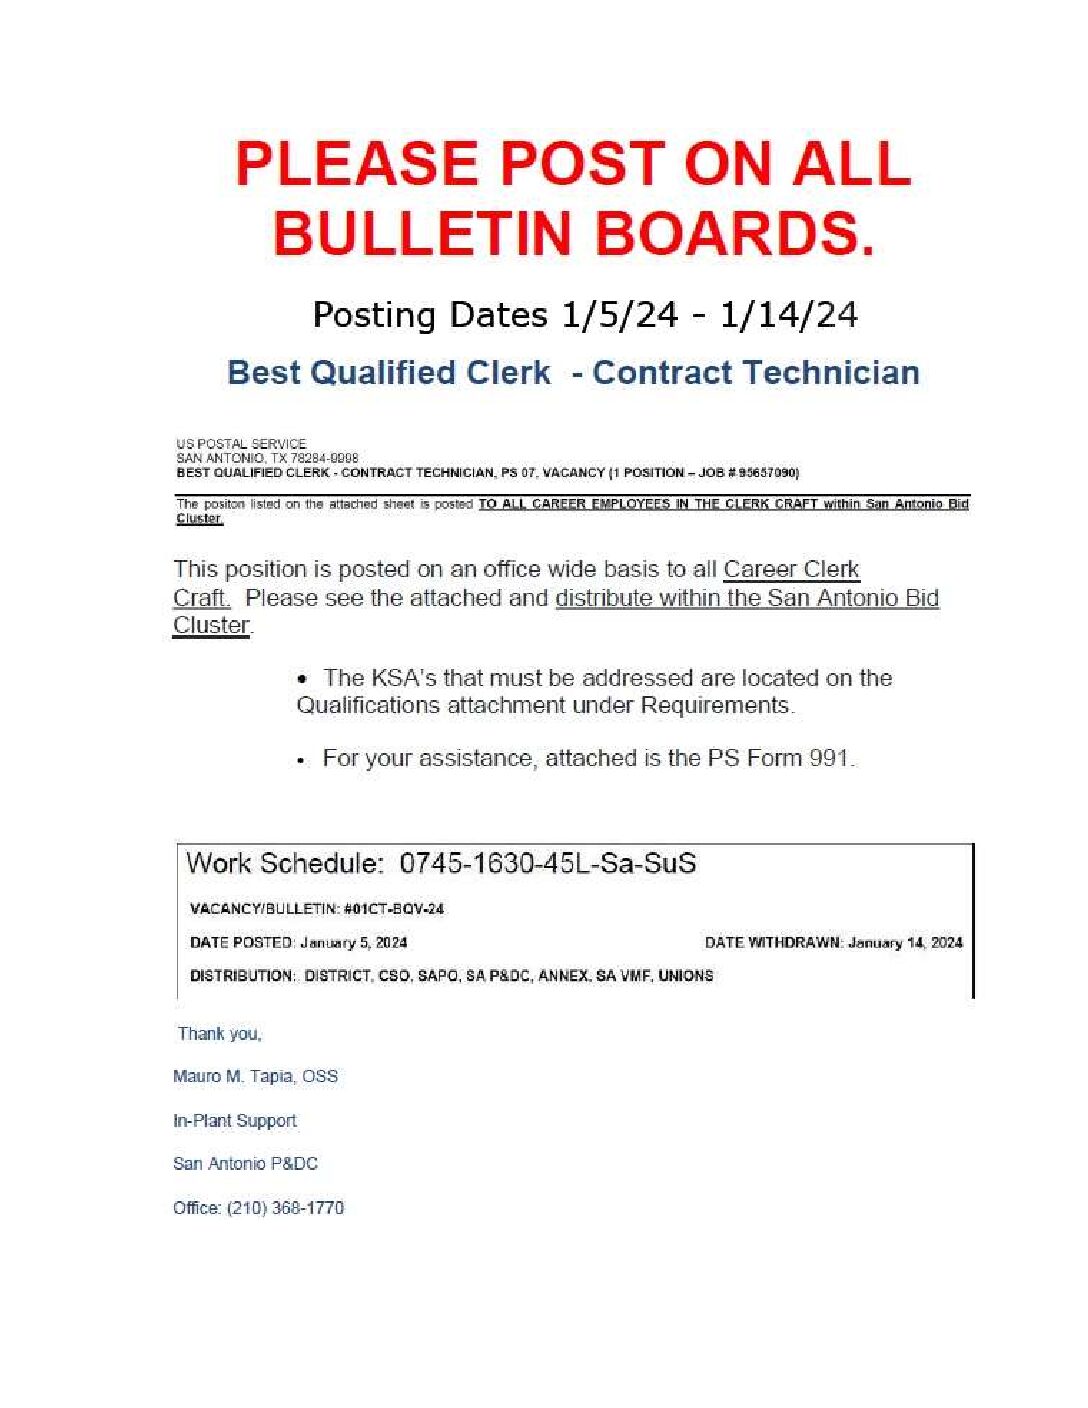 BQ Clerk Contract Technician Posting 1/5/24 - 